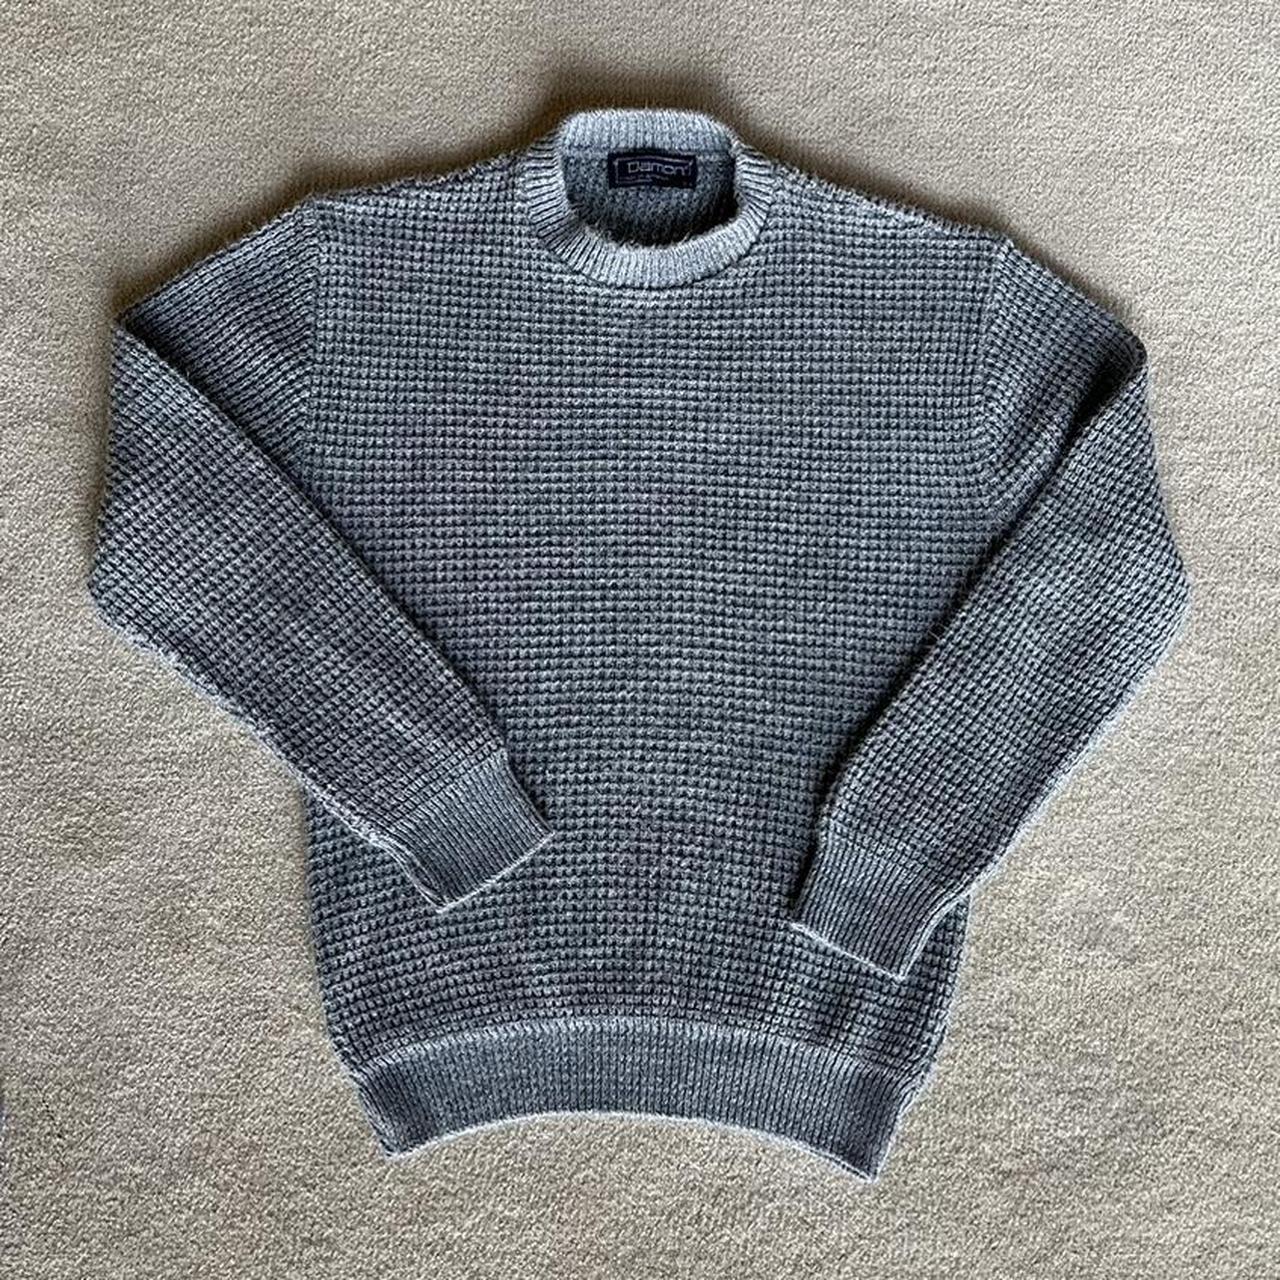 Merino Waffle Knit Sweater, USA Made